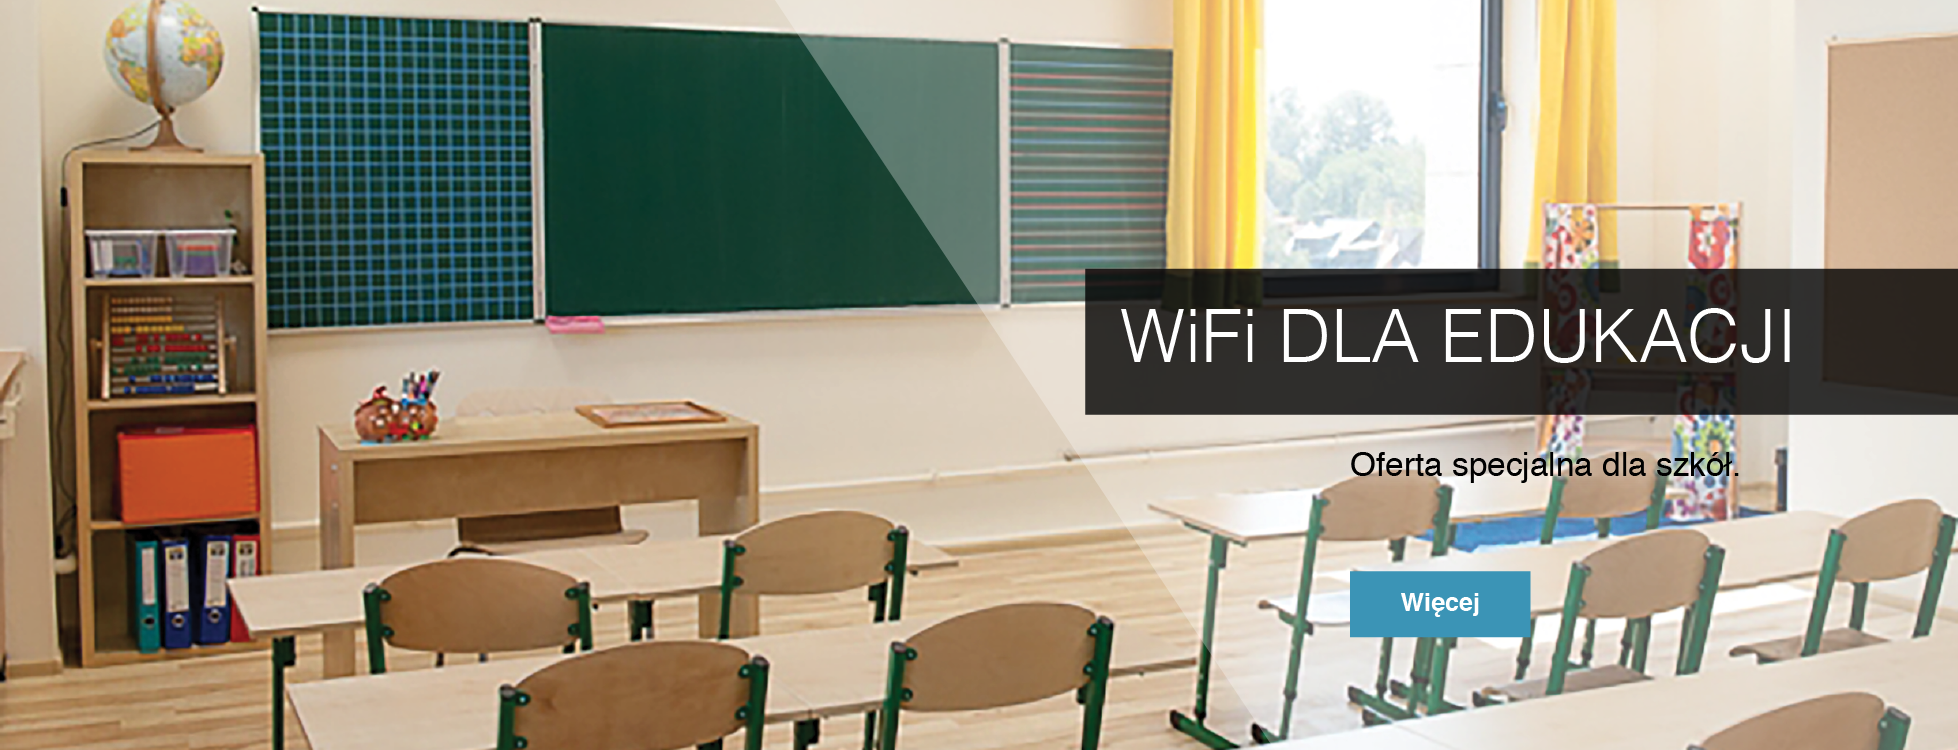 WiFi dla Edukacji